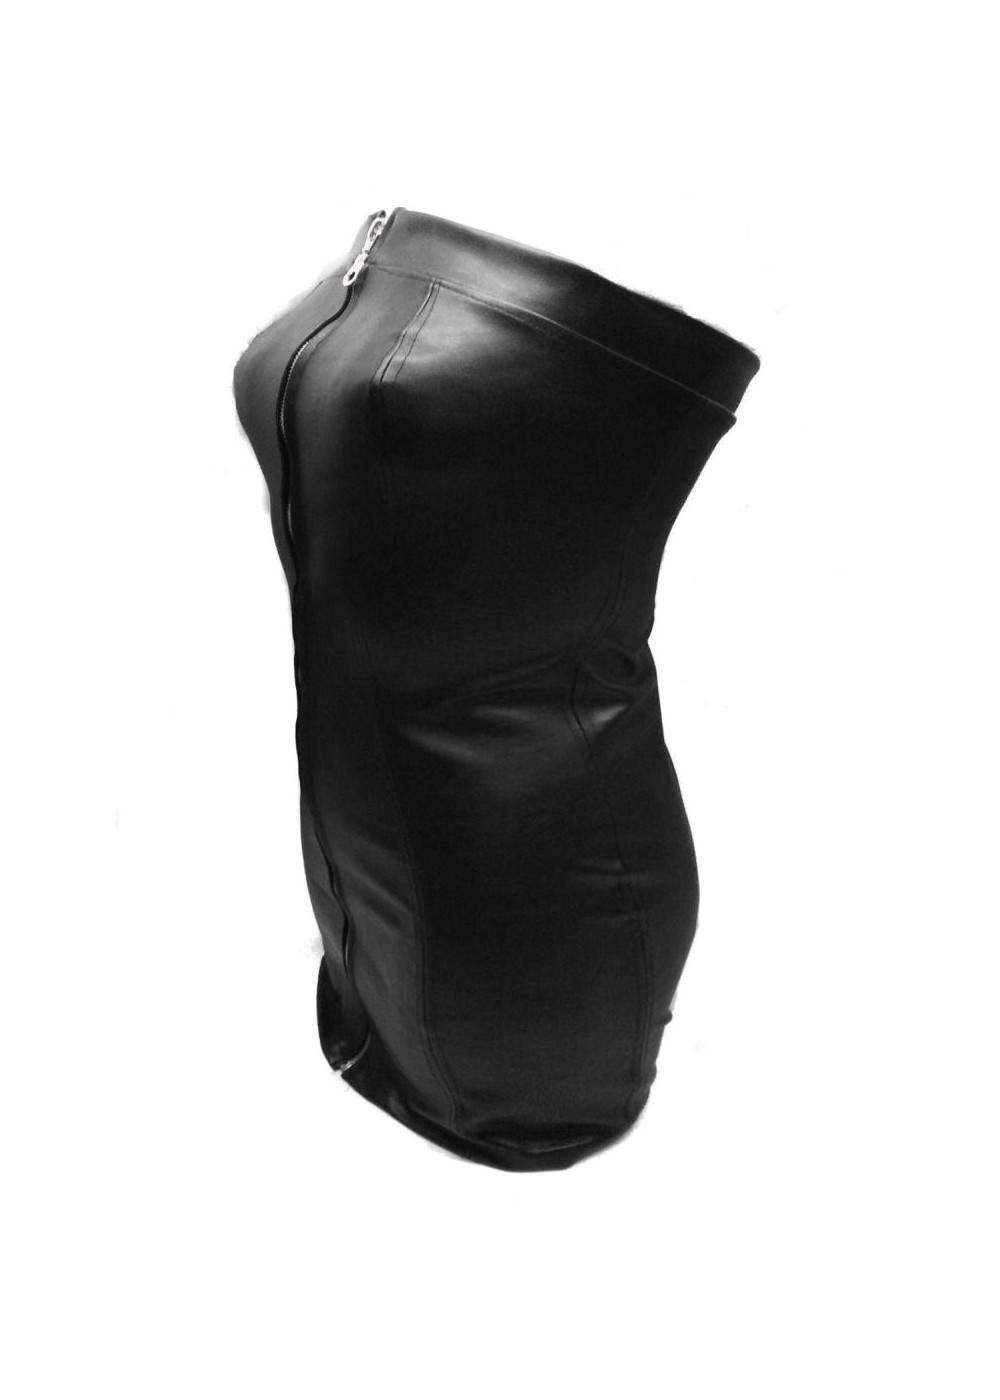 Vestido de cuero negro de diseño talla L - XXL (44 - 52) moda de baile, clu... - 